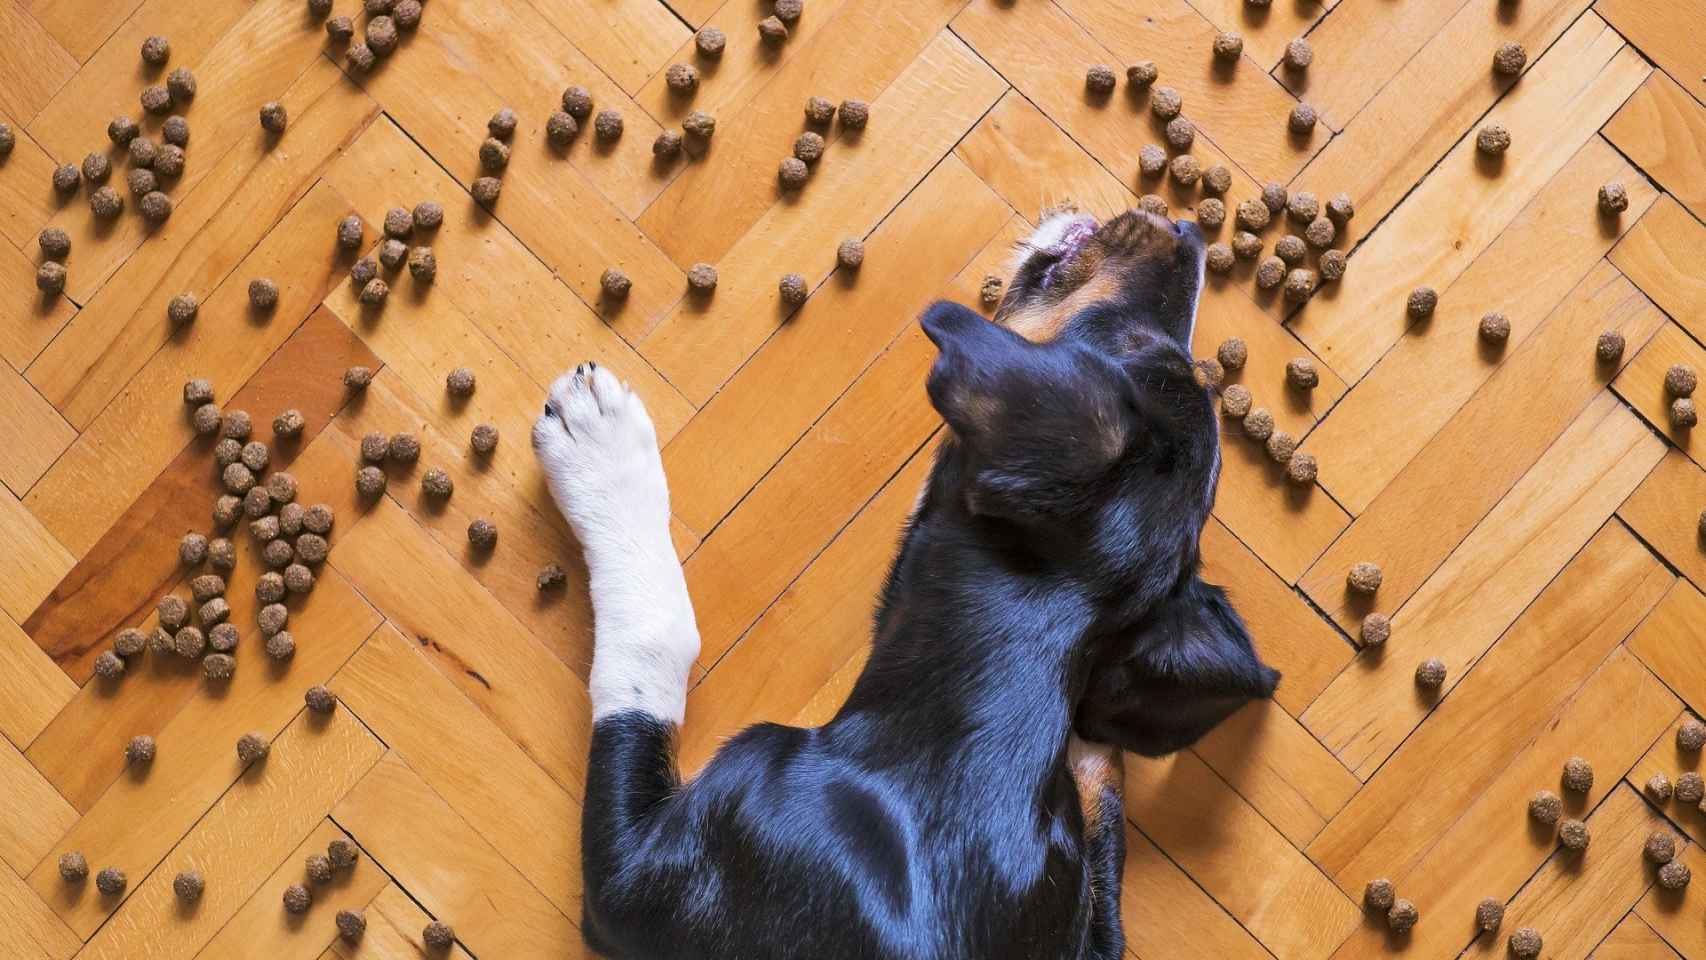 Un perro come el pienso esparcido sobre el suelo de una casa.